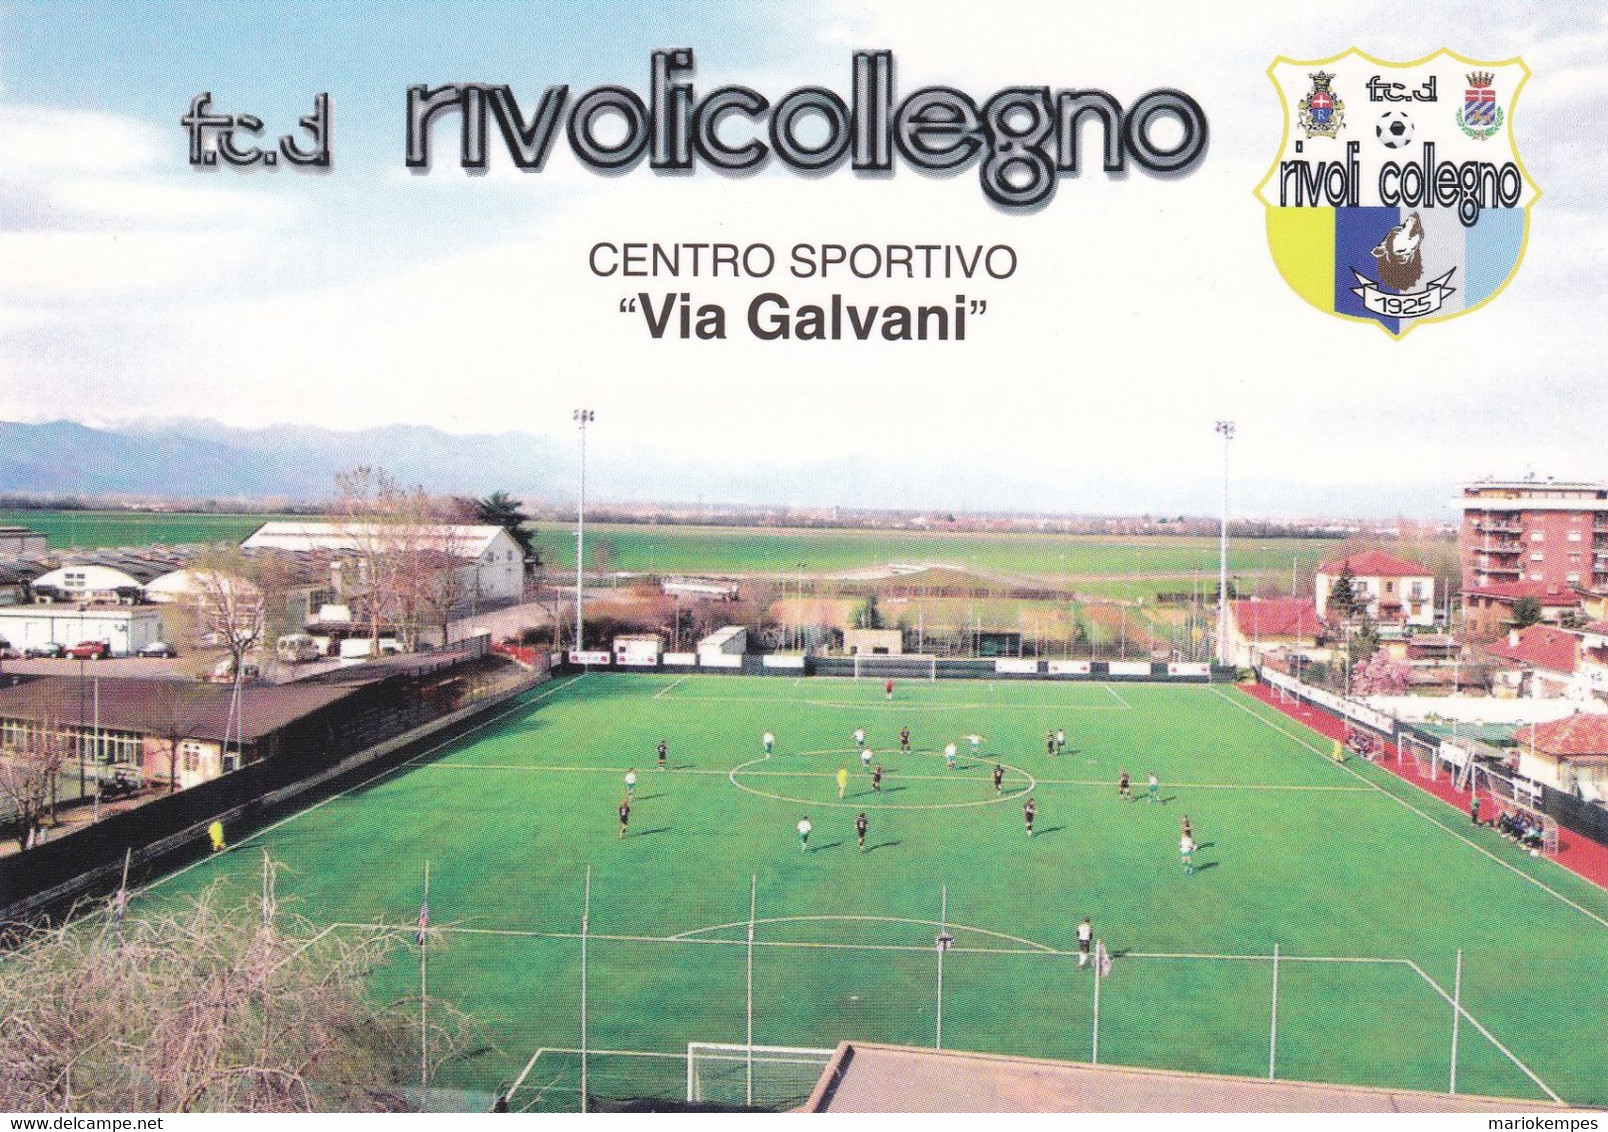 COLLEGNO ( TO )_F.C.D. RIVOLICOLLEGNO_CENTRO SPORTIVO "VIA GALVANI" _Stadium_Stade_Estadio_Stadion - Stadia & Sportstructuren